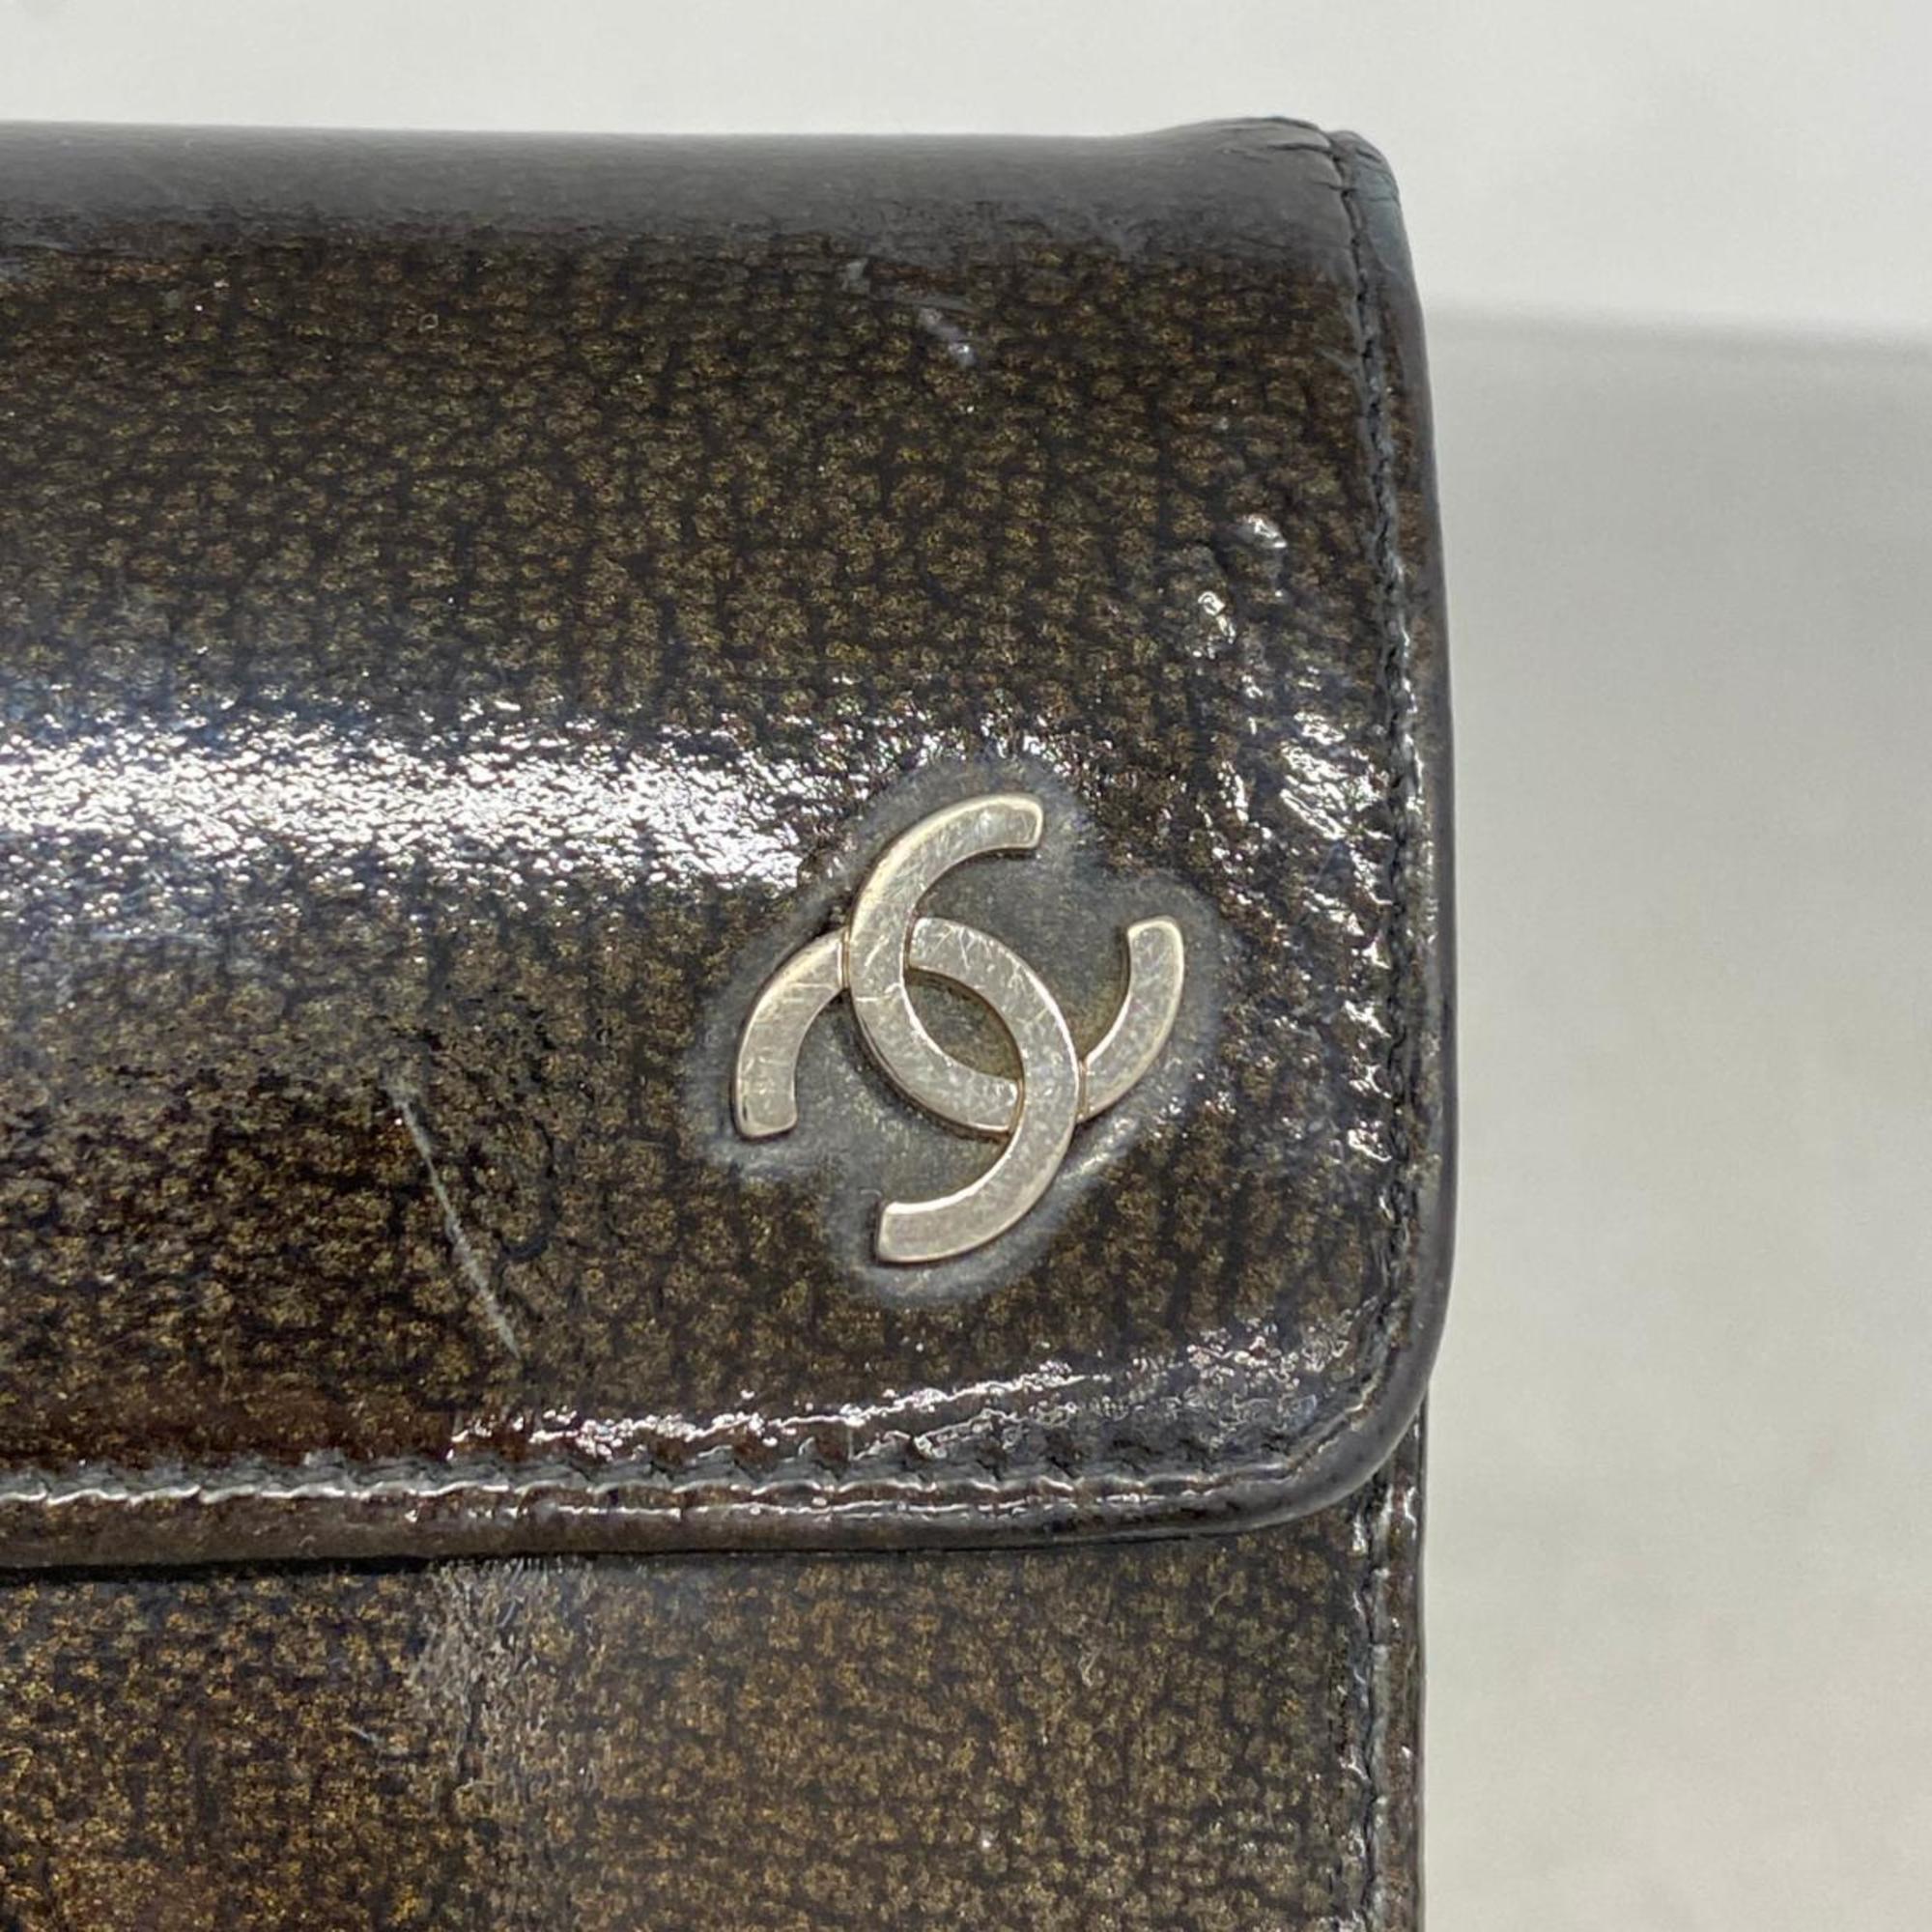 シャネル(Chanel) シャネル 三つ折り長財布 パテントレザー ブラック   レディース